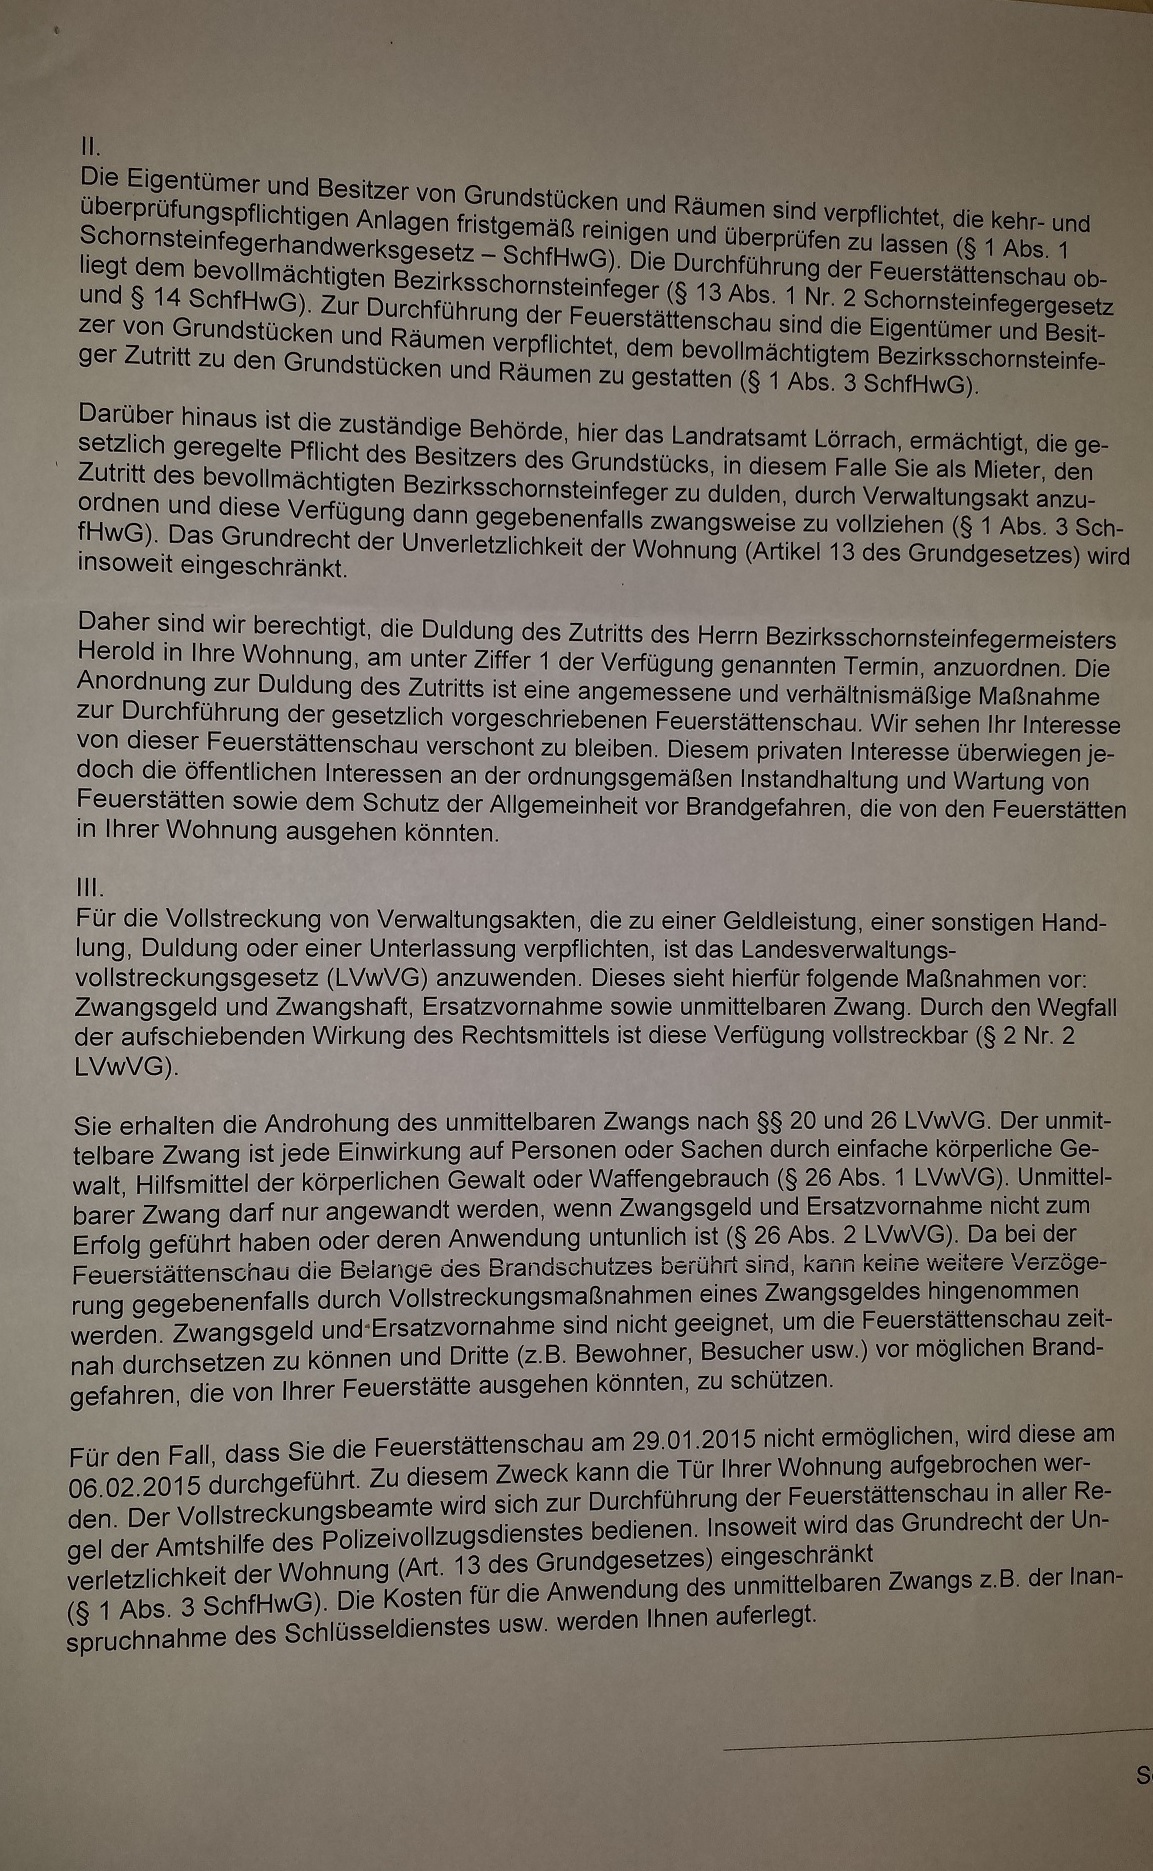 LRAL Baurecht Anschreiben Friederike Meier 20150123 p2